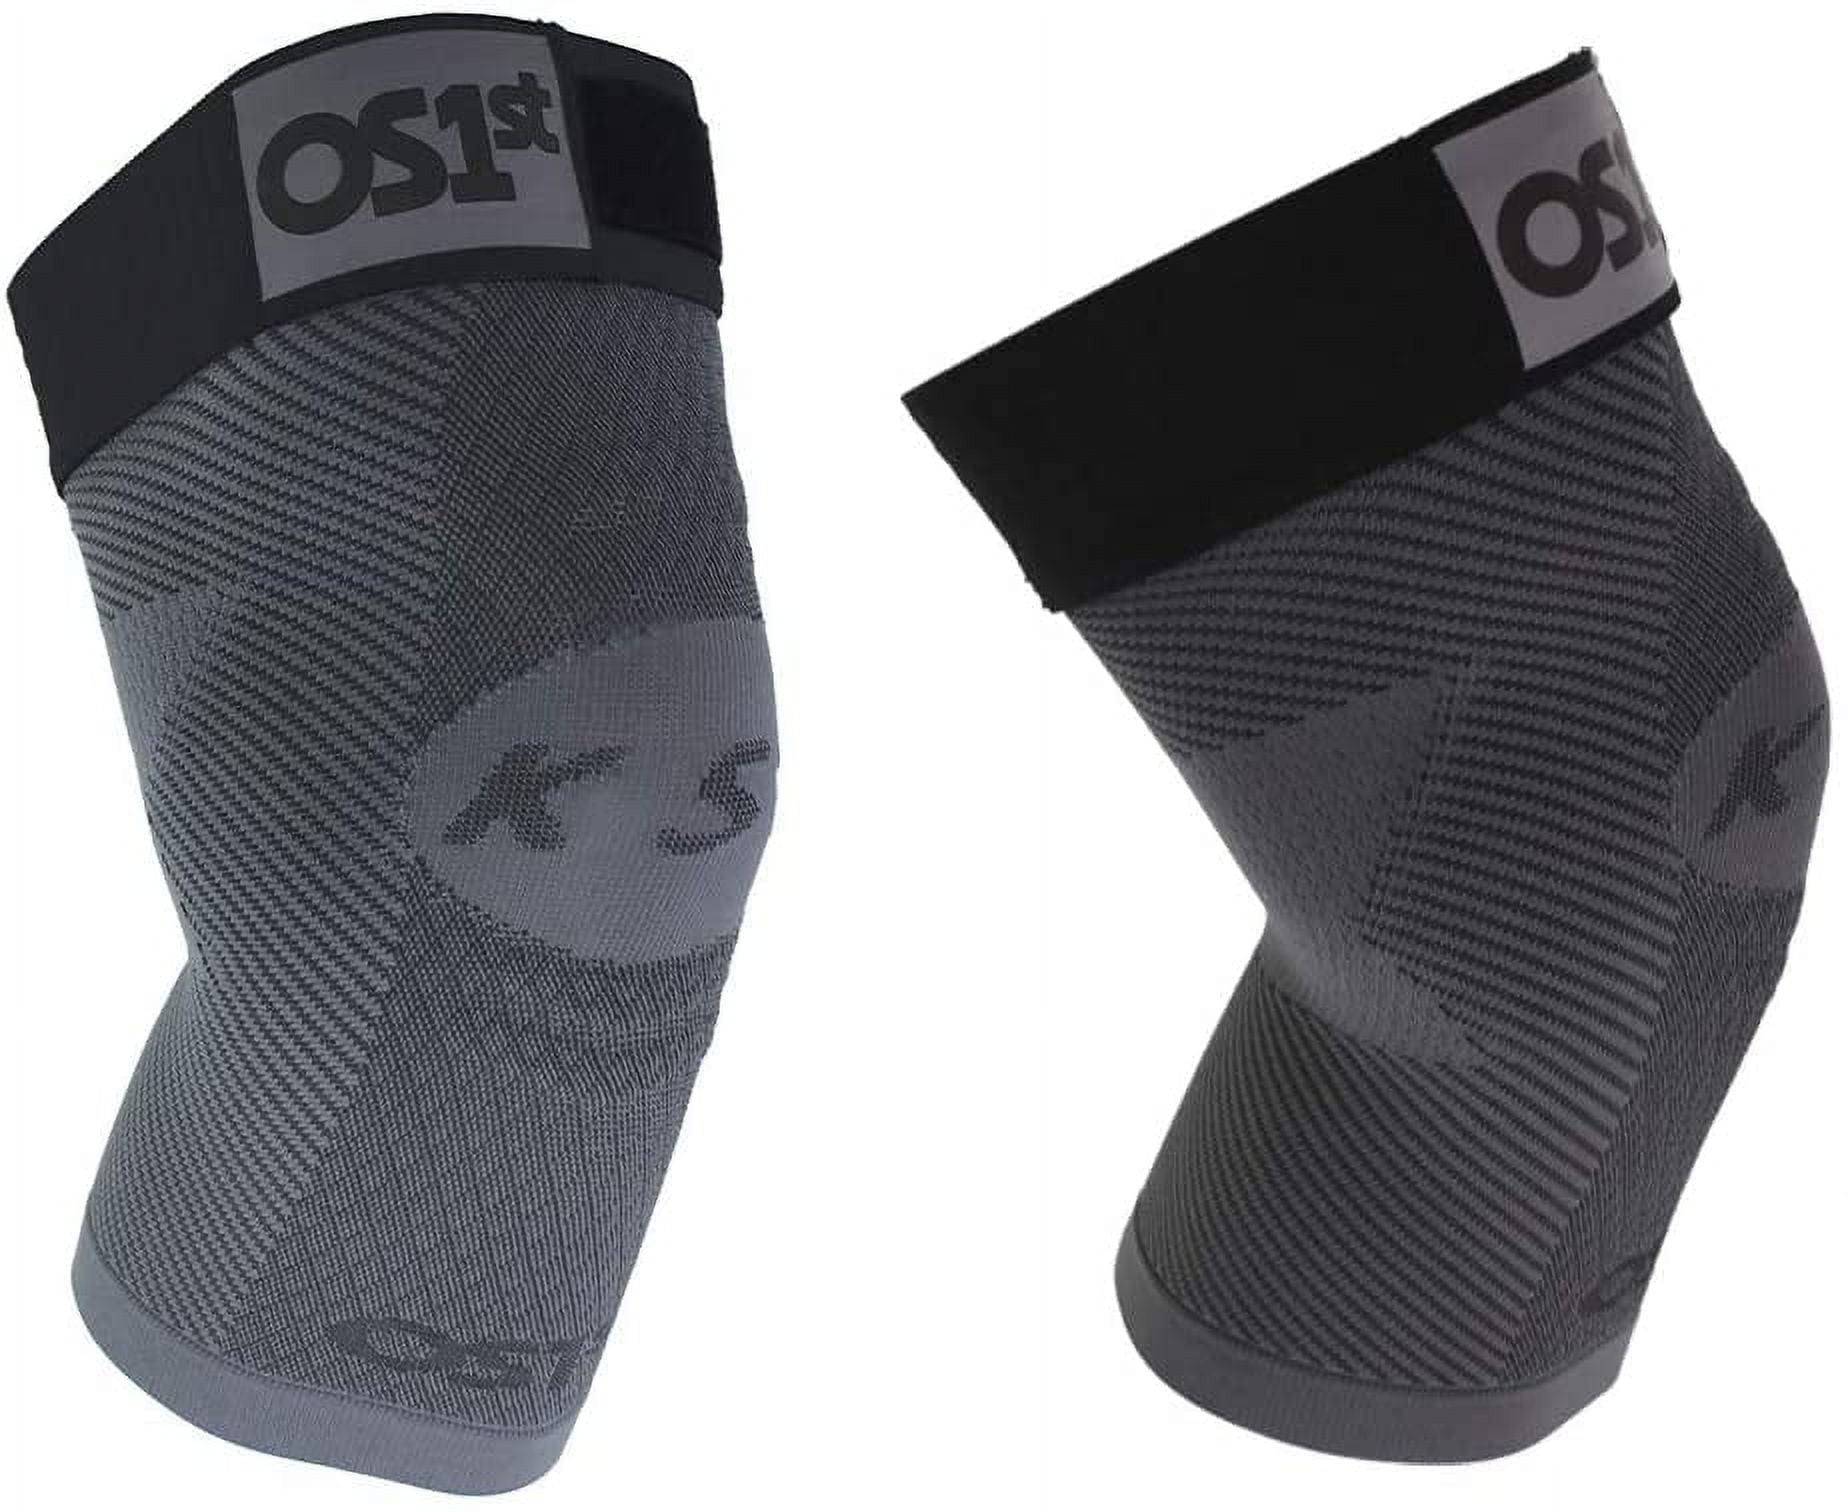 OrthoSleeve Adjustable KS7+ Performance Compression Knee Sleeve, Single,  Small